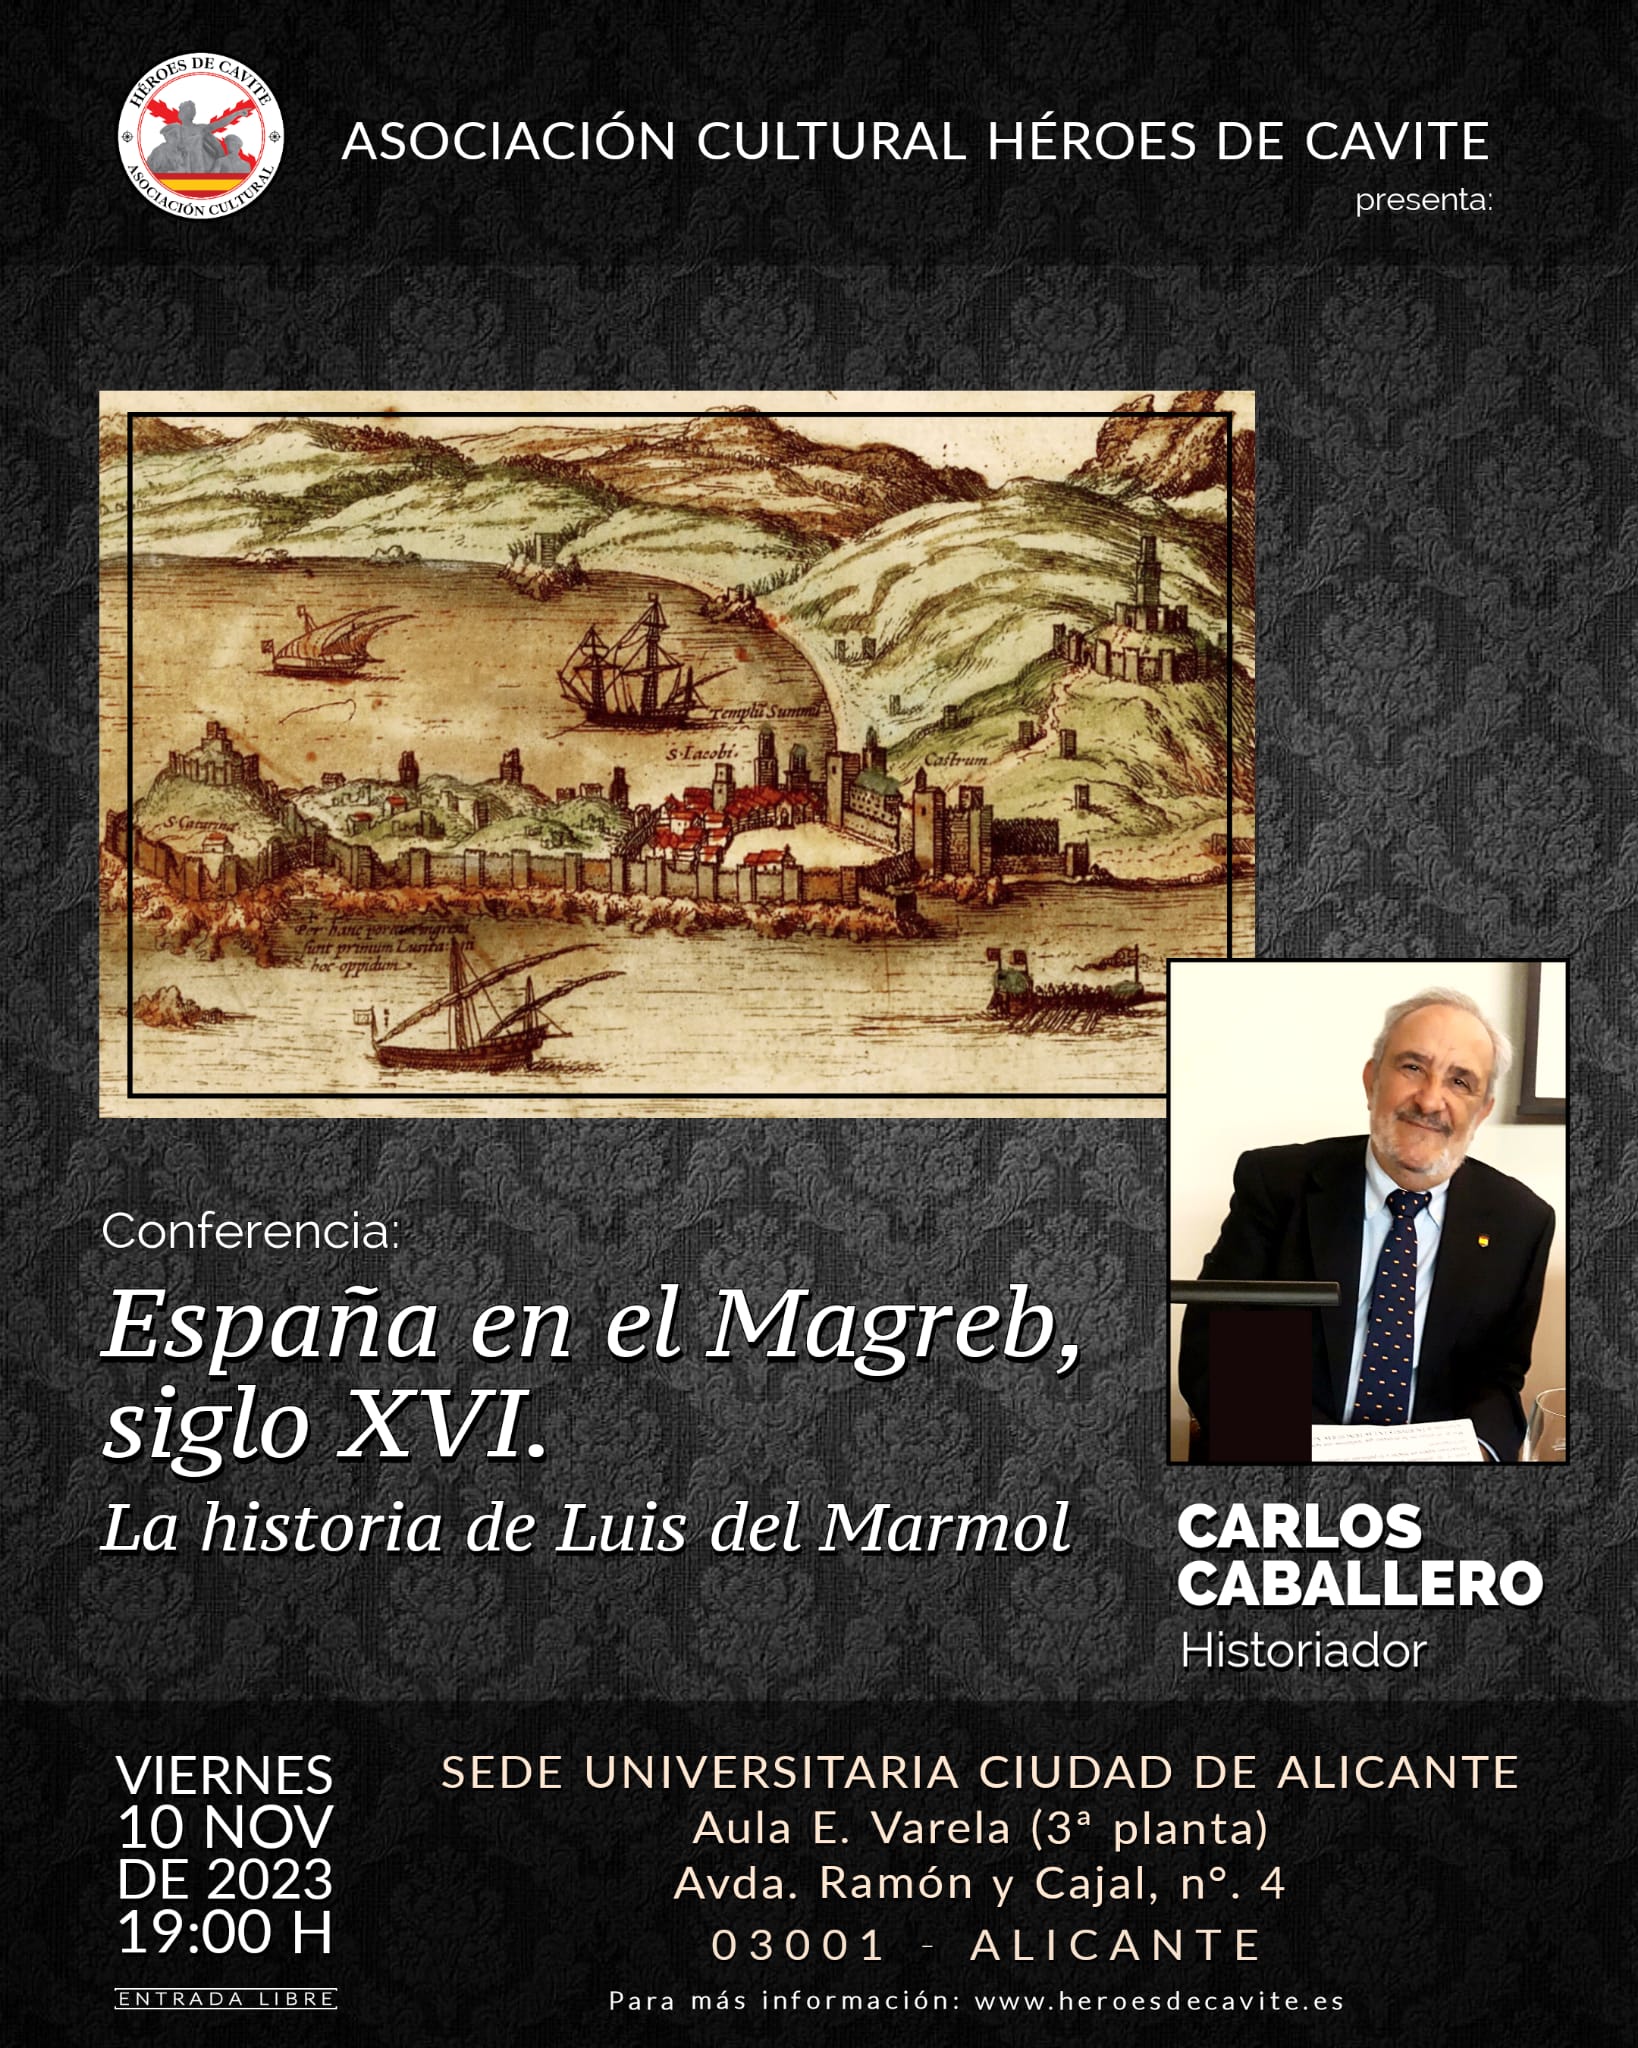 Cartel promocional de la conferencia "España en el Magreb, siglo XVI" a cargo de Carlos Caballero Jurado. El evento se celebra en León, España, y el cartel incluye detalles logísticos y de contacto.